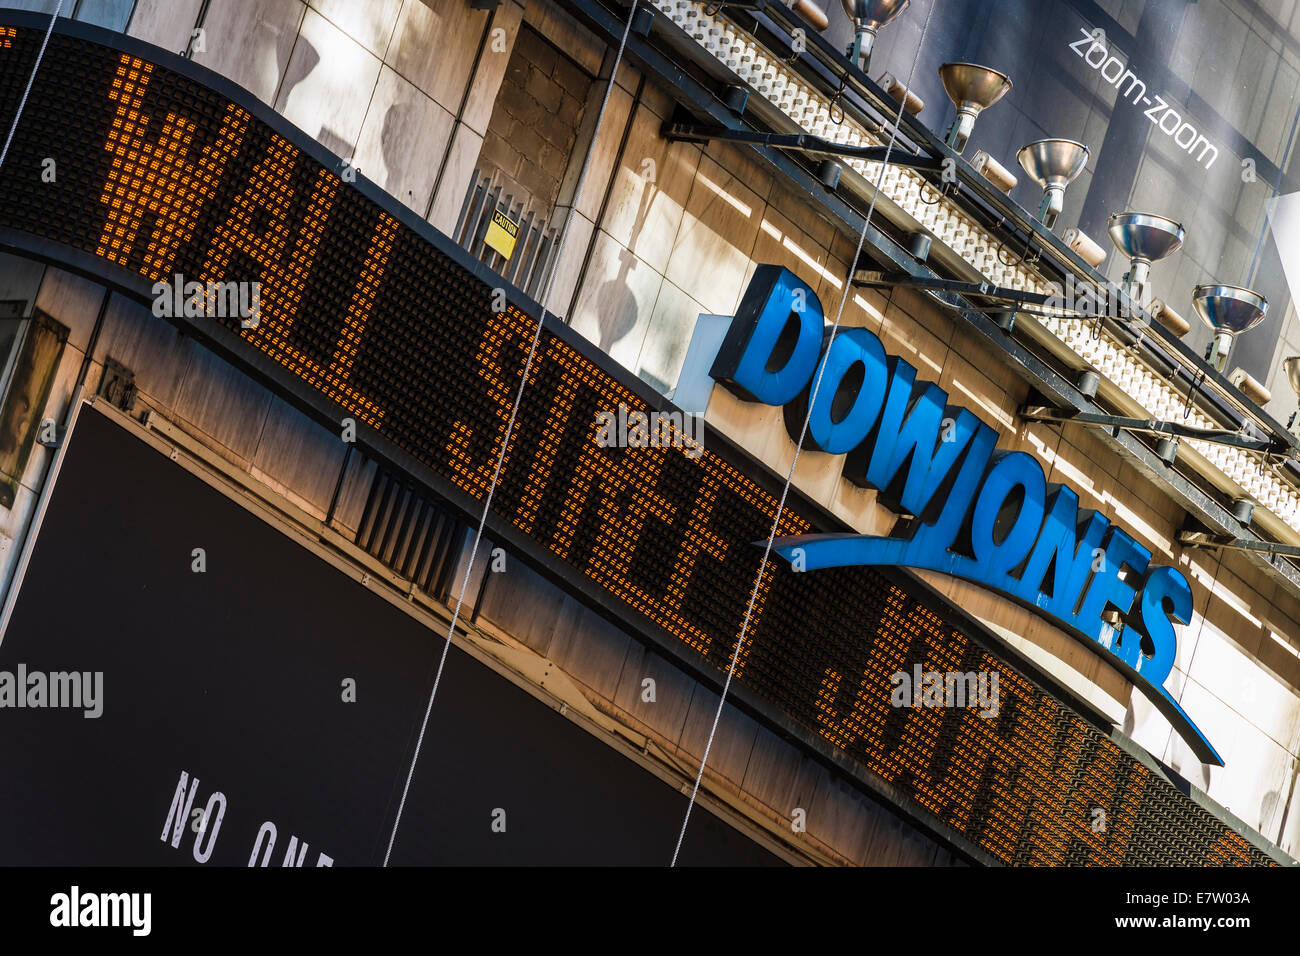 Une enseigne lumineuse affiche les dernières manchettes Wall Street Journal sous le logo de Dow Jones dans Times Square, Midtown Manhattan Banque D'Images